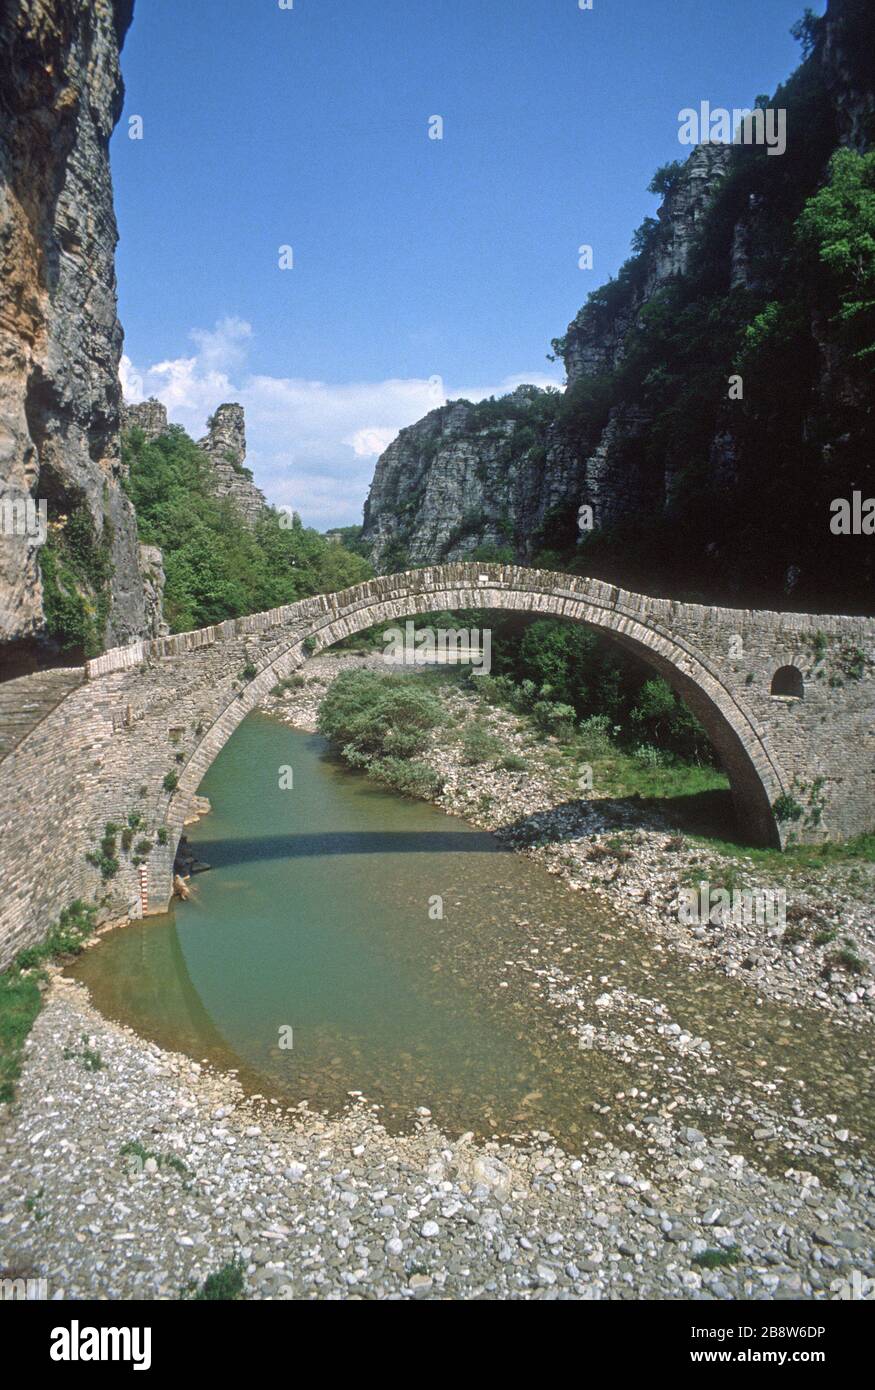 Il Nutsu o Kokoros Monotossus ponte in pietra ad arco singolo, che attraversa il fiume Vikaki sulla gola di Vikos. Costruito nel 1750. A Zagori, Epiro, Grecia. Il Parco Nazionale Zagorochoria - Pindos del Nord ha lo status di patrimonio dell'umanità dell'UNESCO. Foto Stock